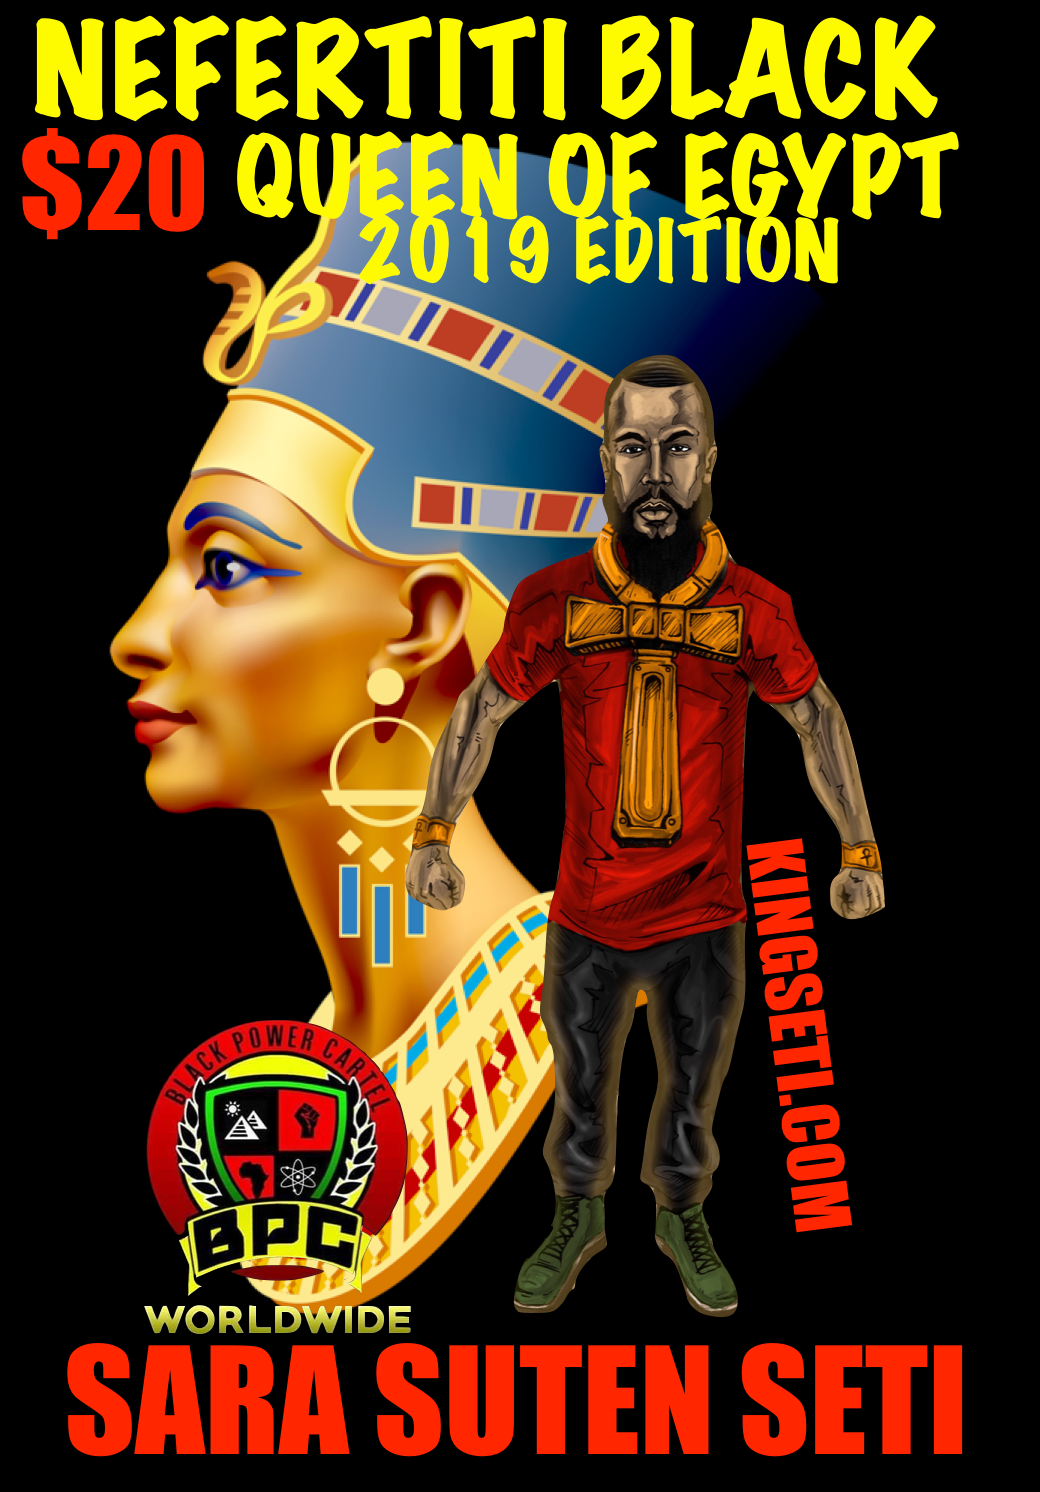 NEFERTITI BLACK QUEEN OF EGYPT!! 2019 EDITION